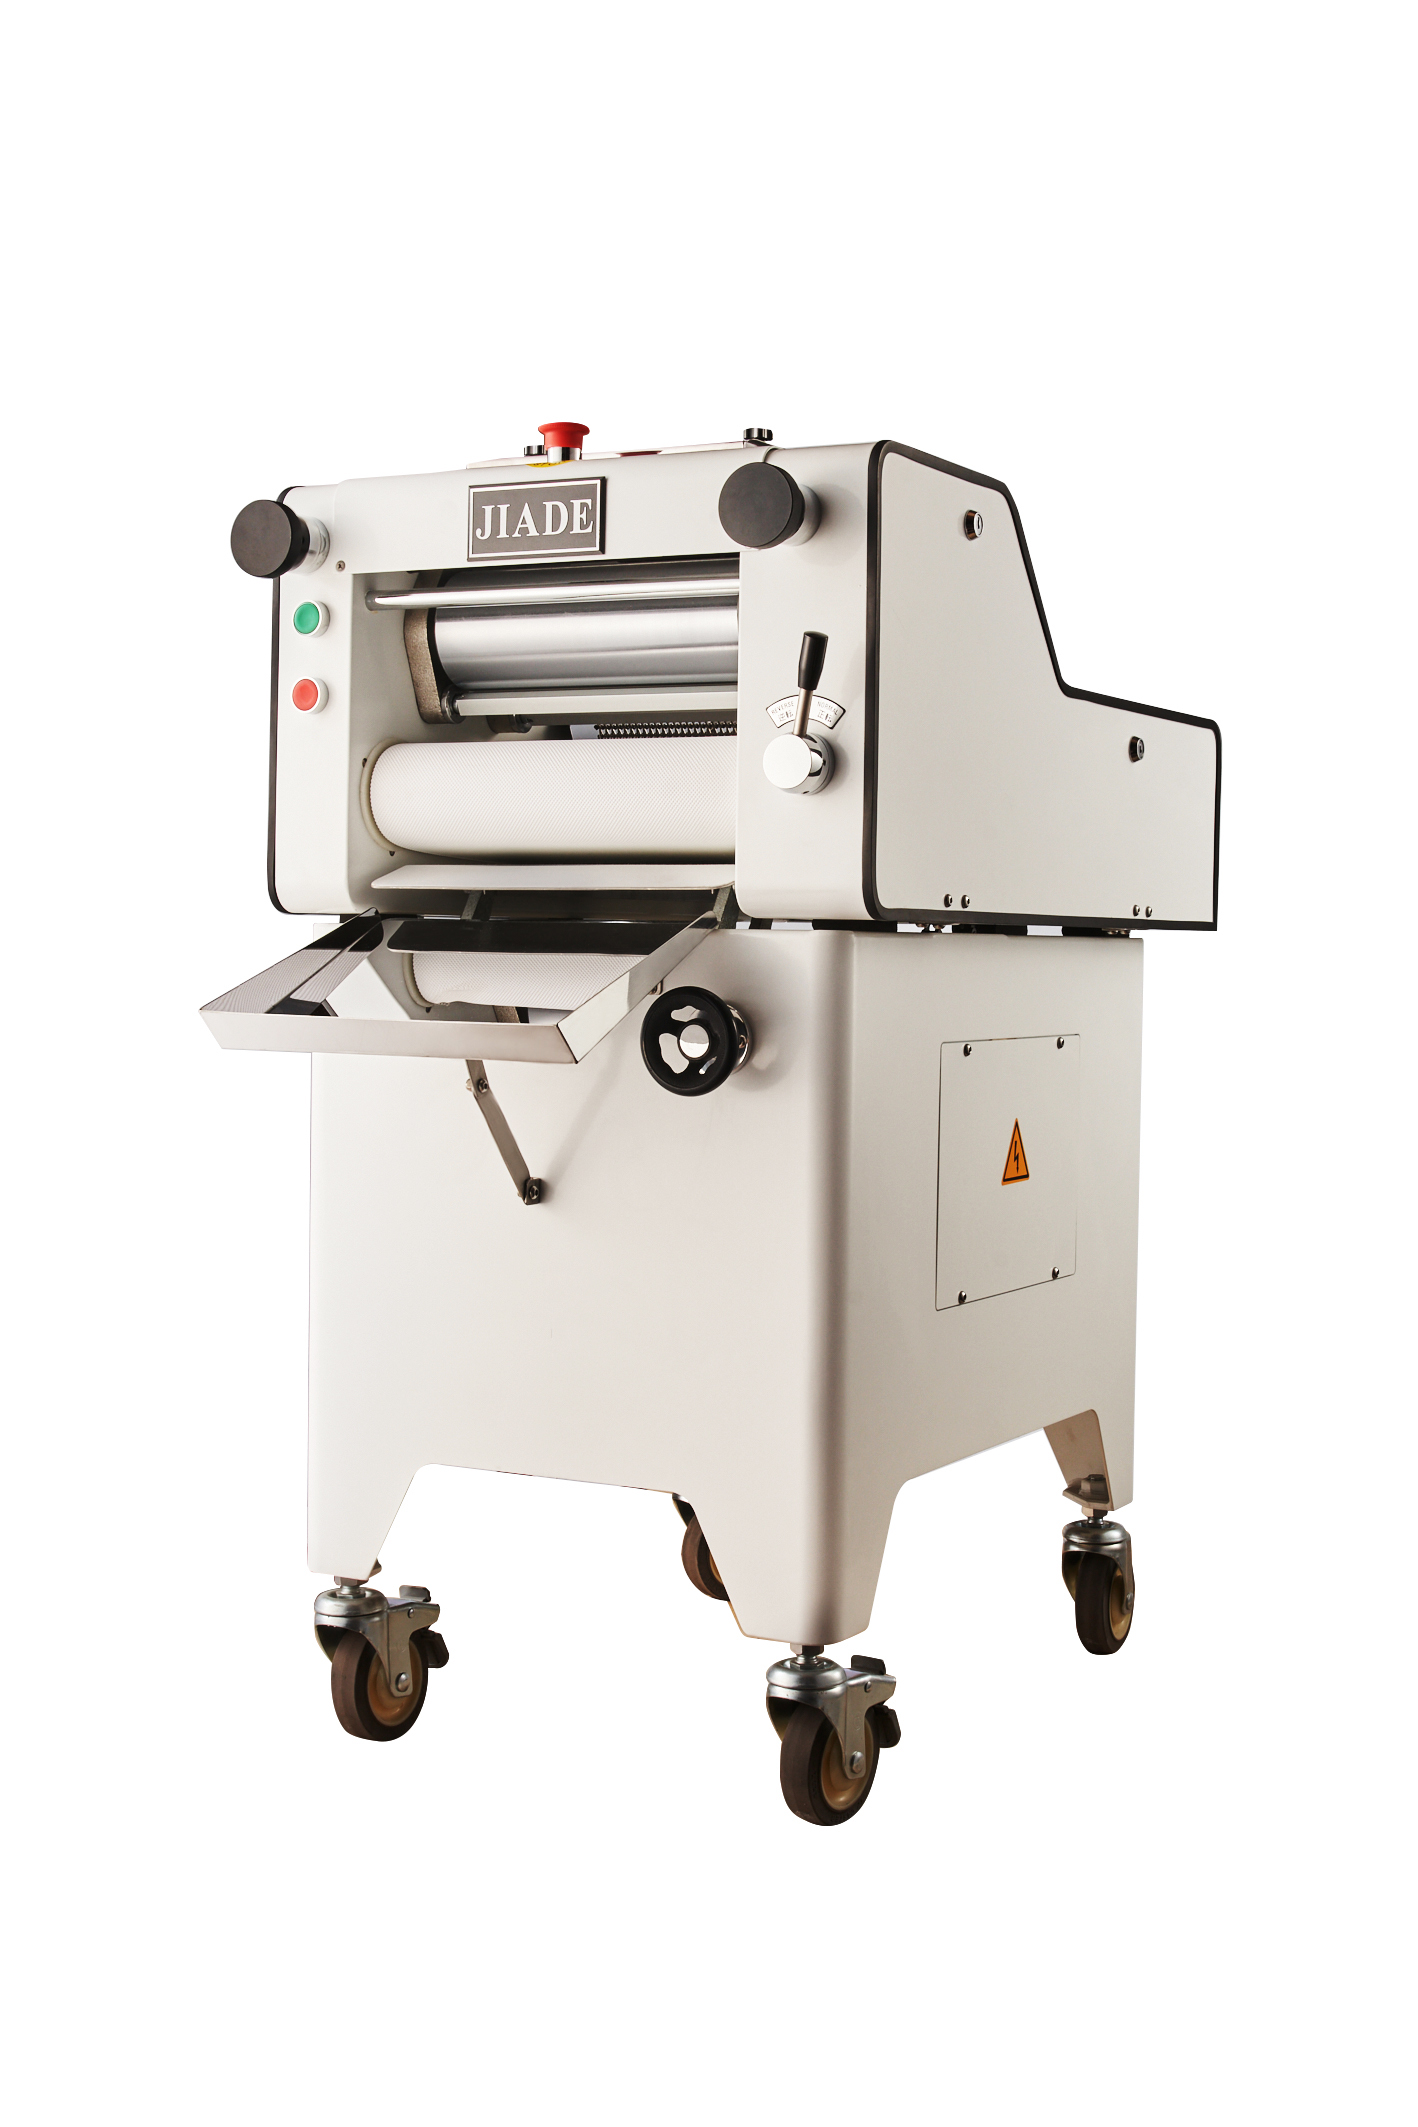 Dough Sheeter JDR-520 - Jiade Bakery Equipment